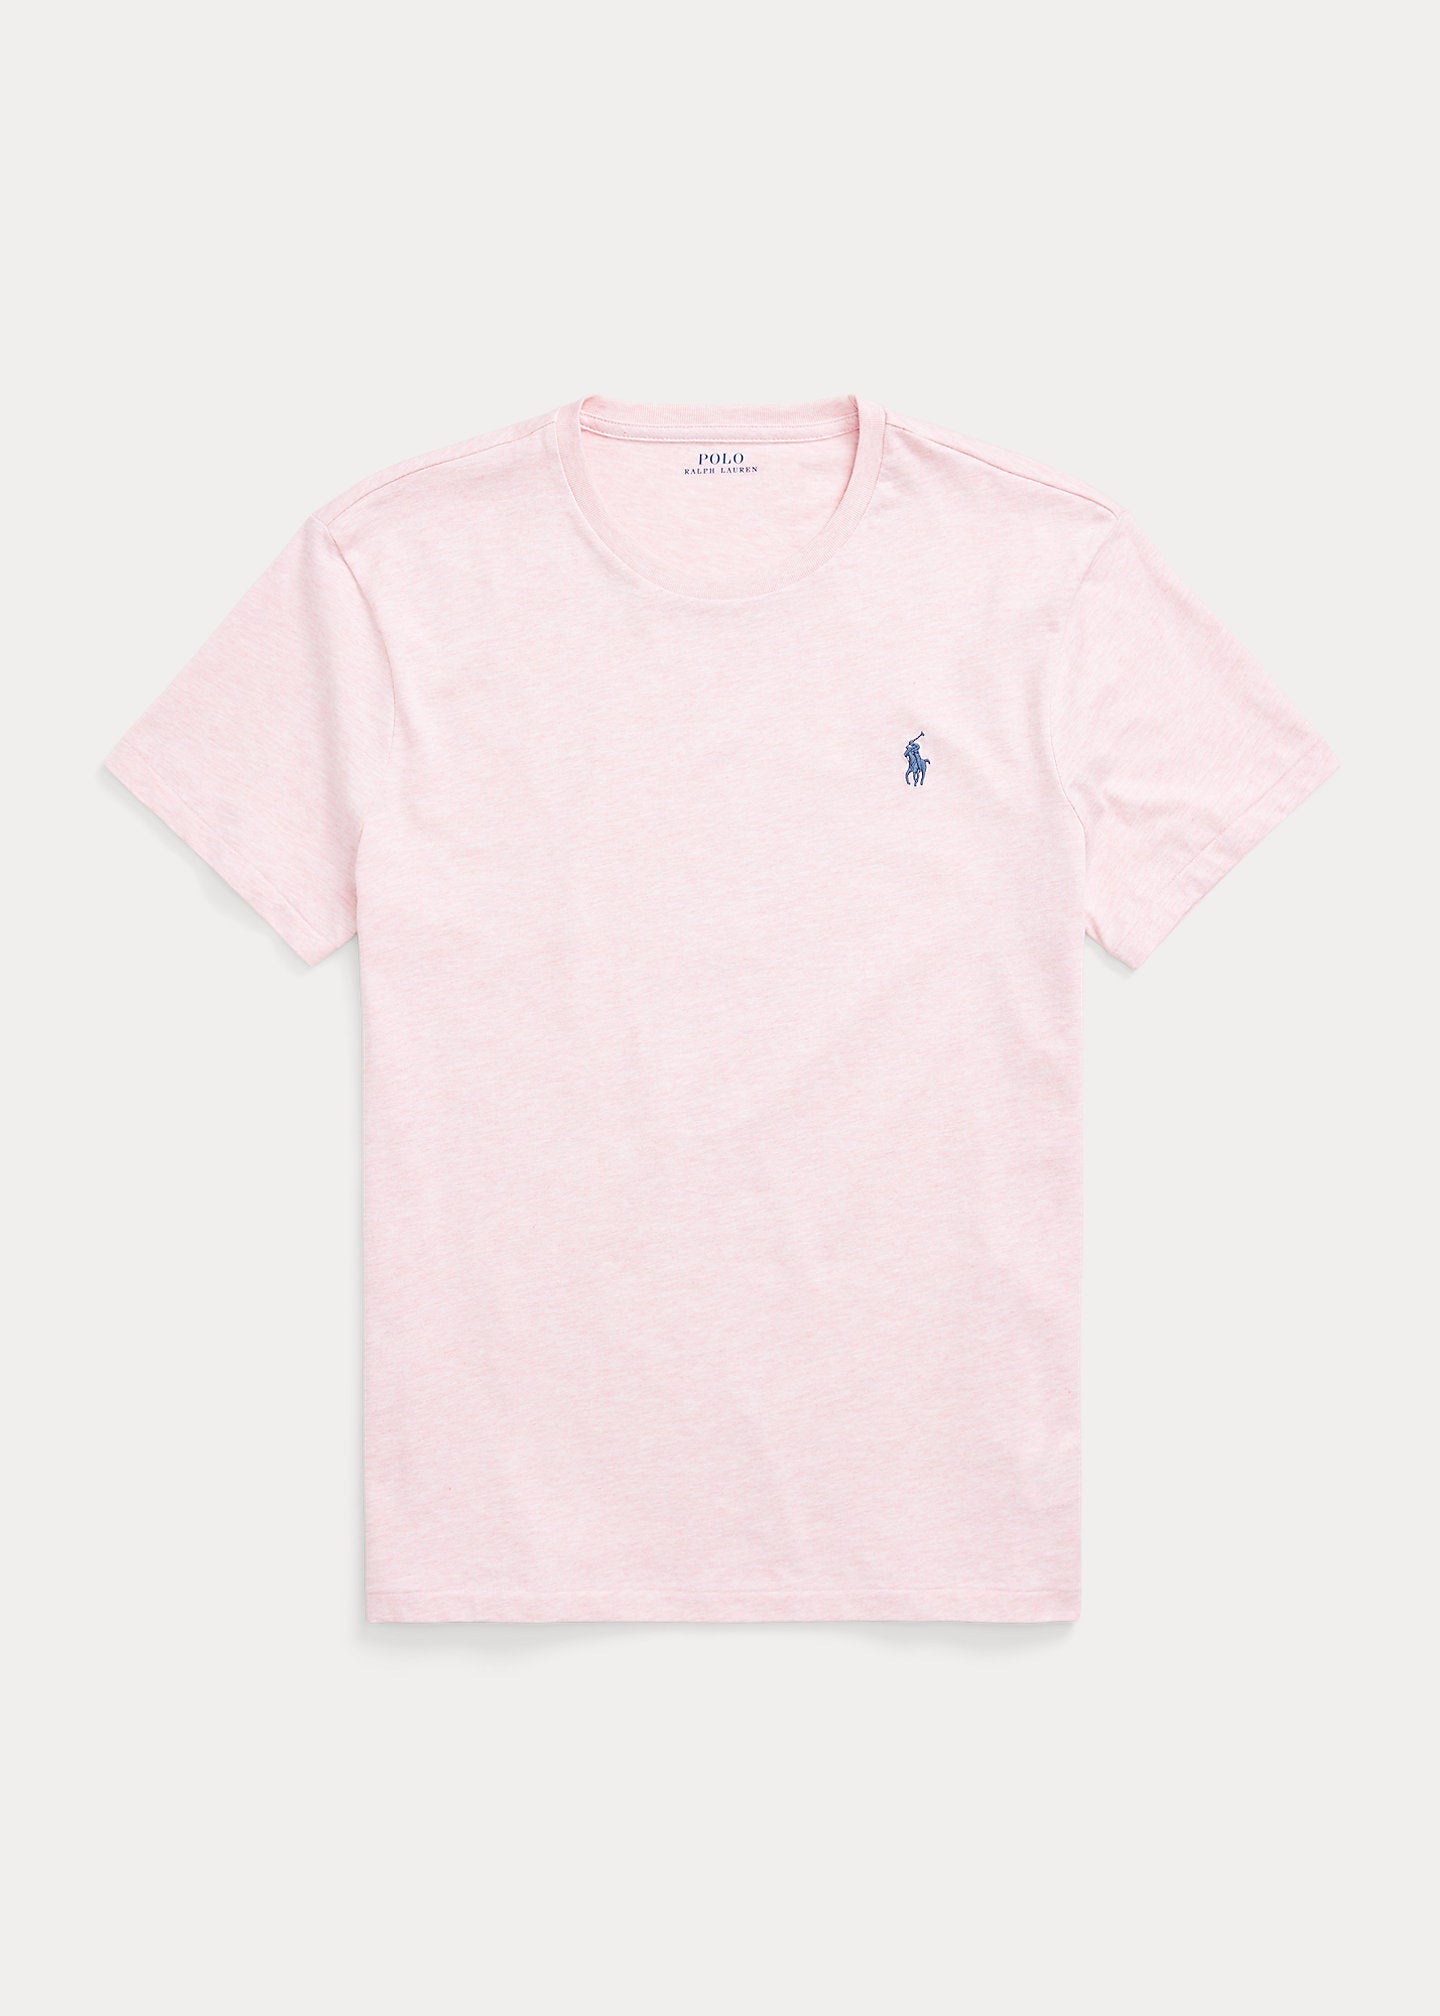 T-Shirt homme Ralph Lauren ajusté rose clair en jersey | Georgespaul